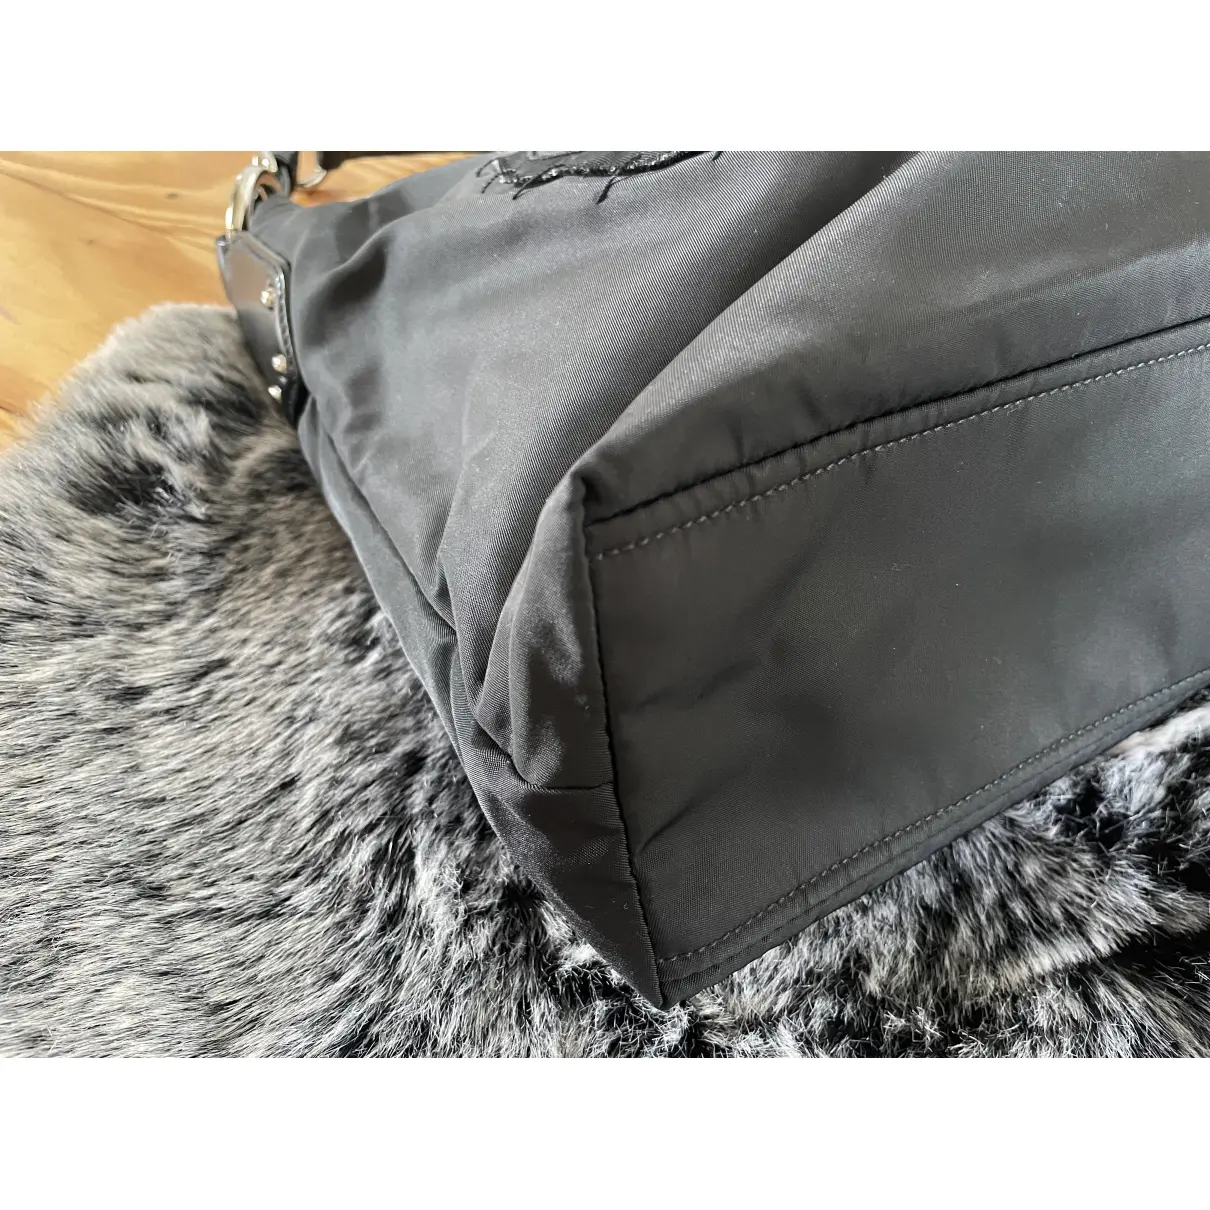 Re-Nylon handbag Prada